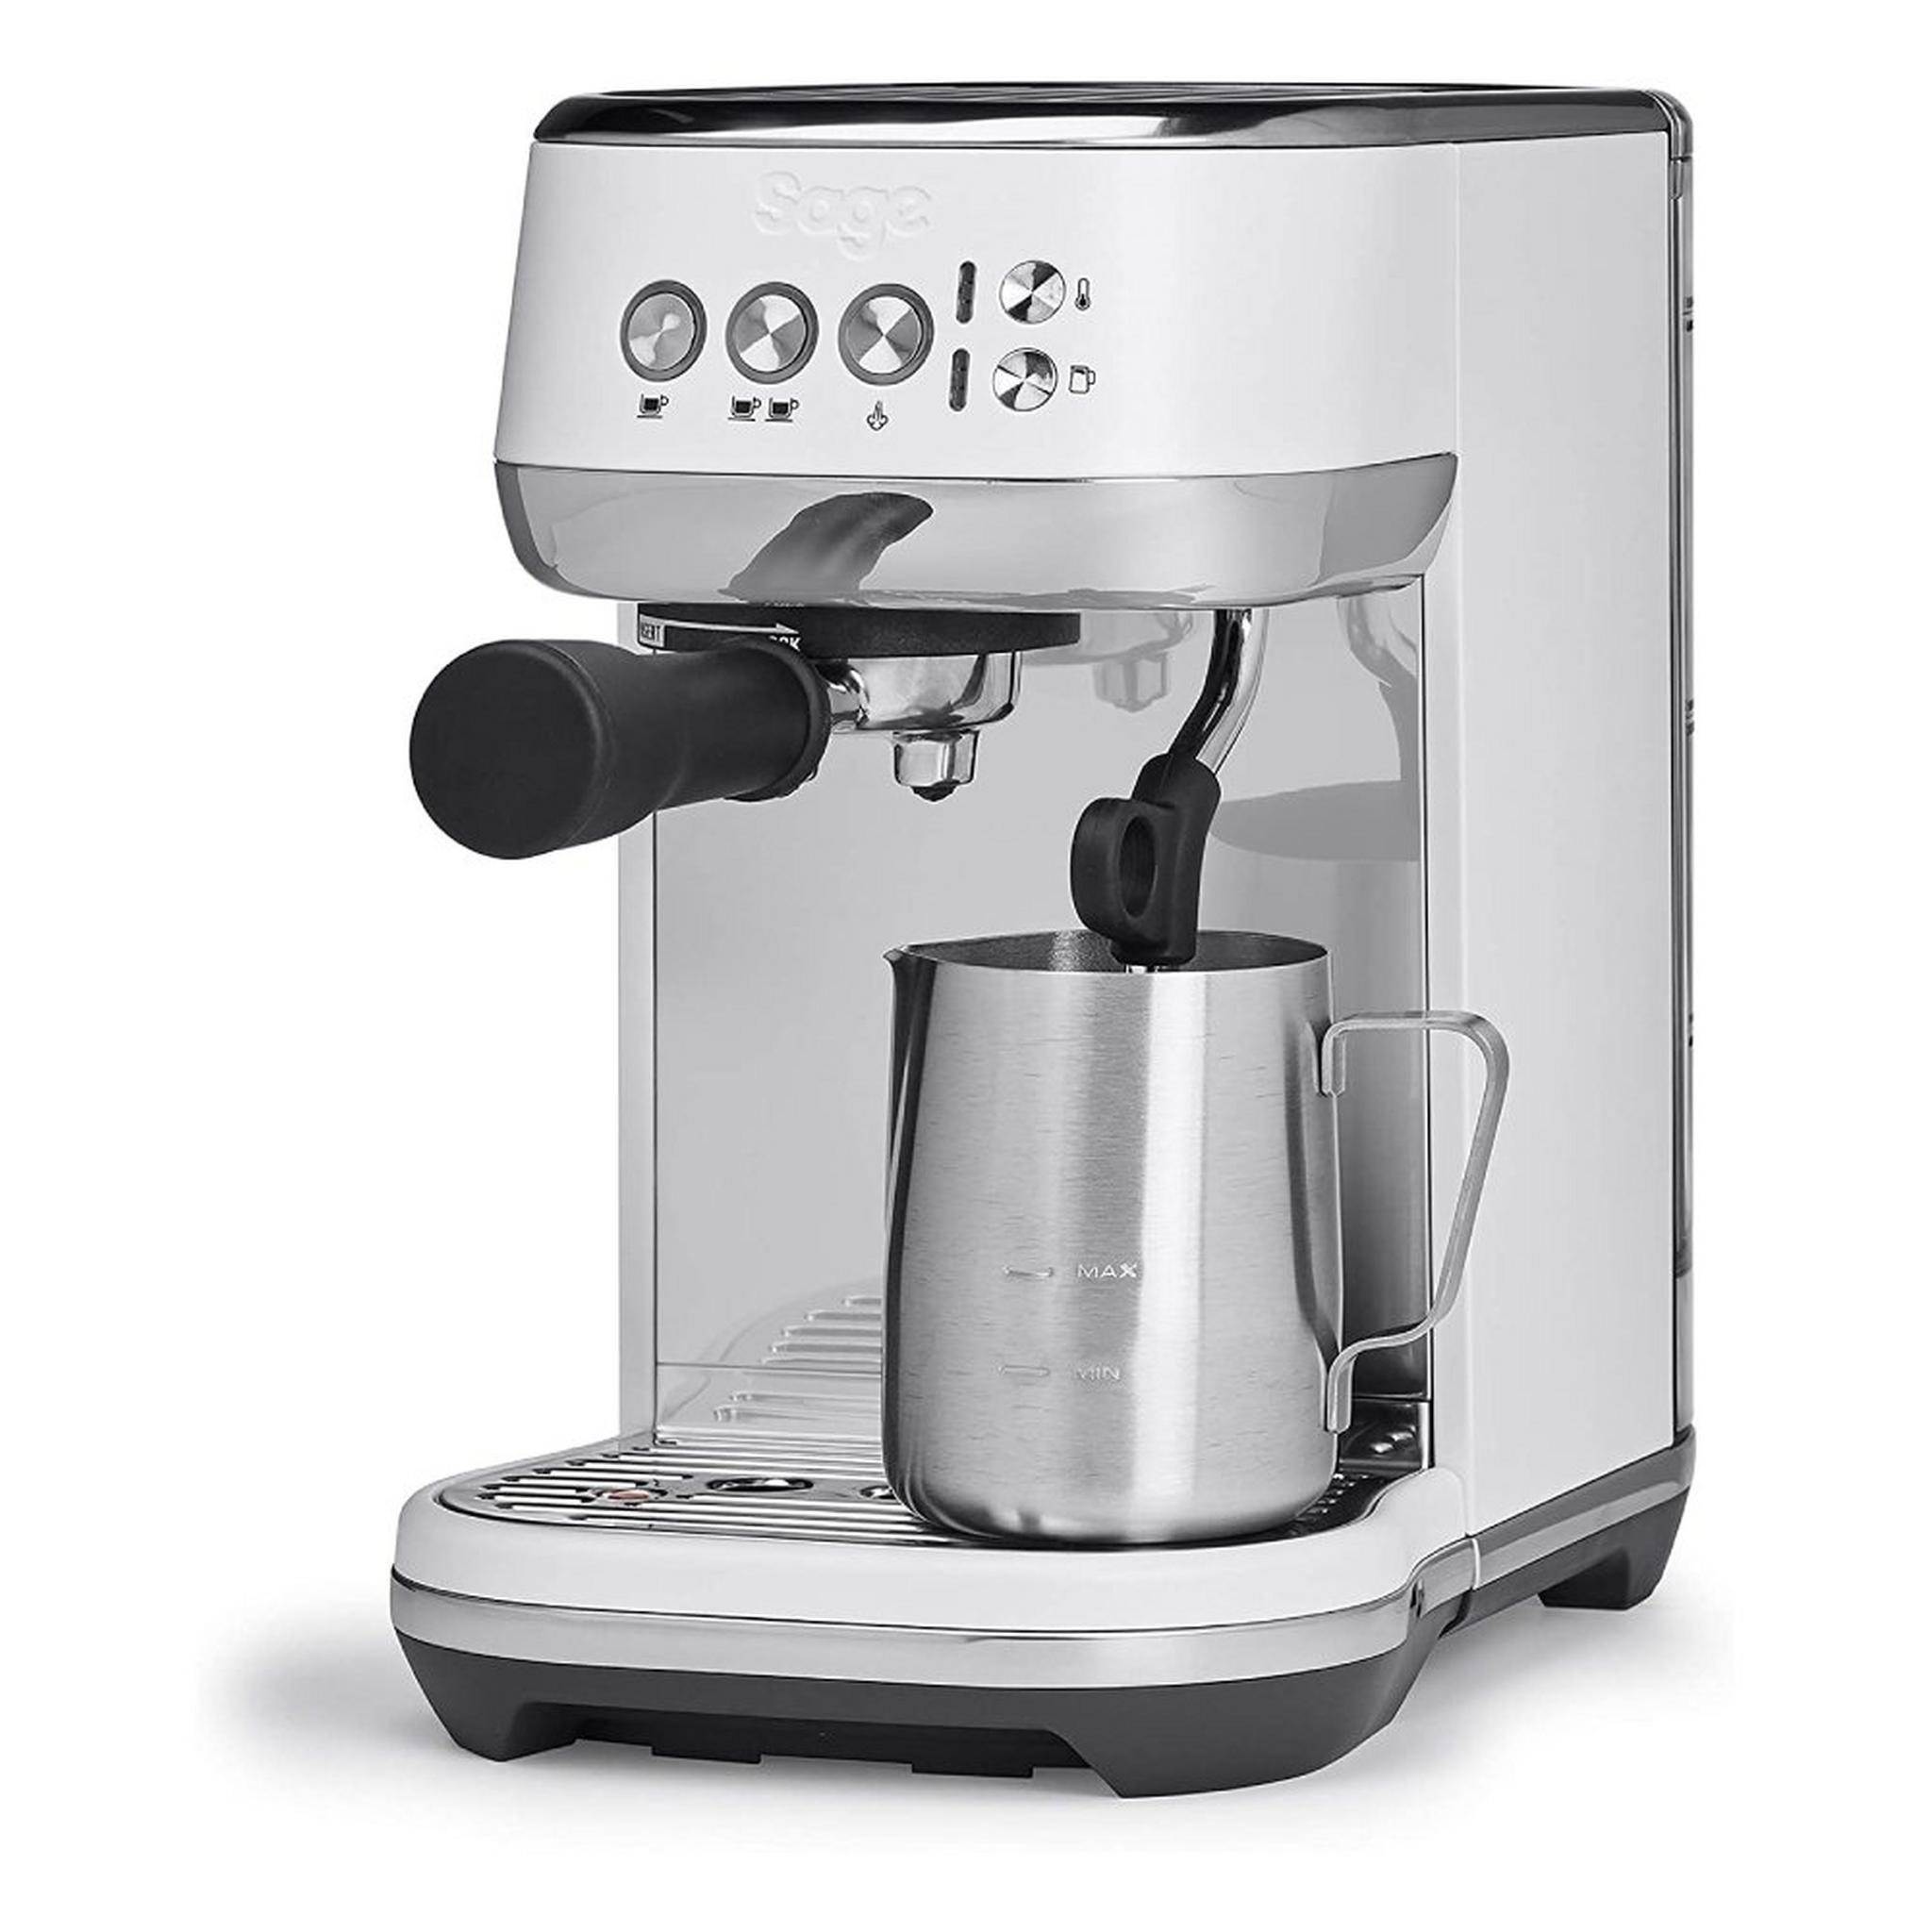 ماكينة تحضير القهوة بامبينو بلاس من سيج، بقدرة 1600 واط، سعة 1.9 لتر، SES500SST - فضي